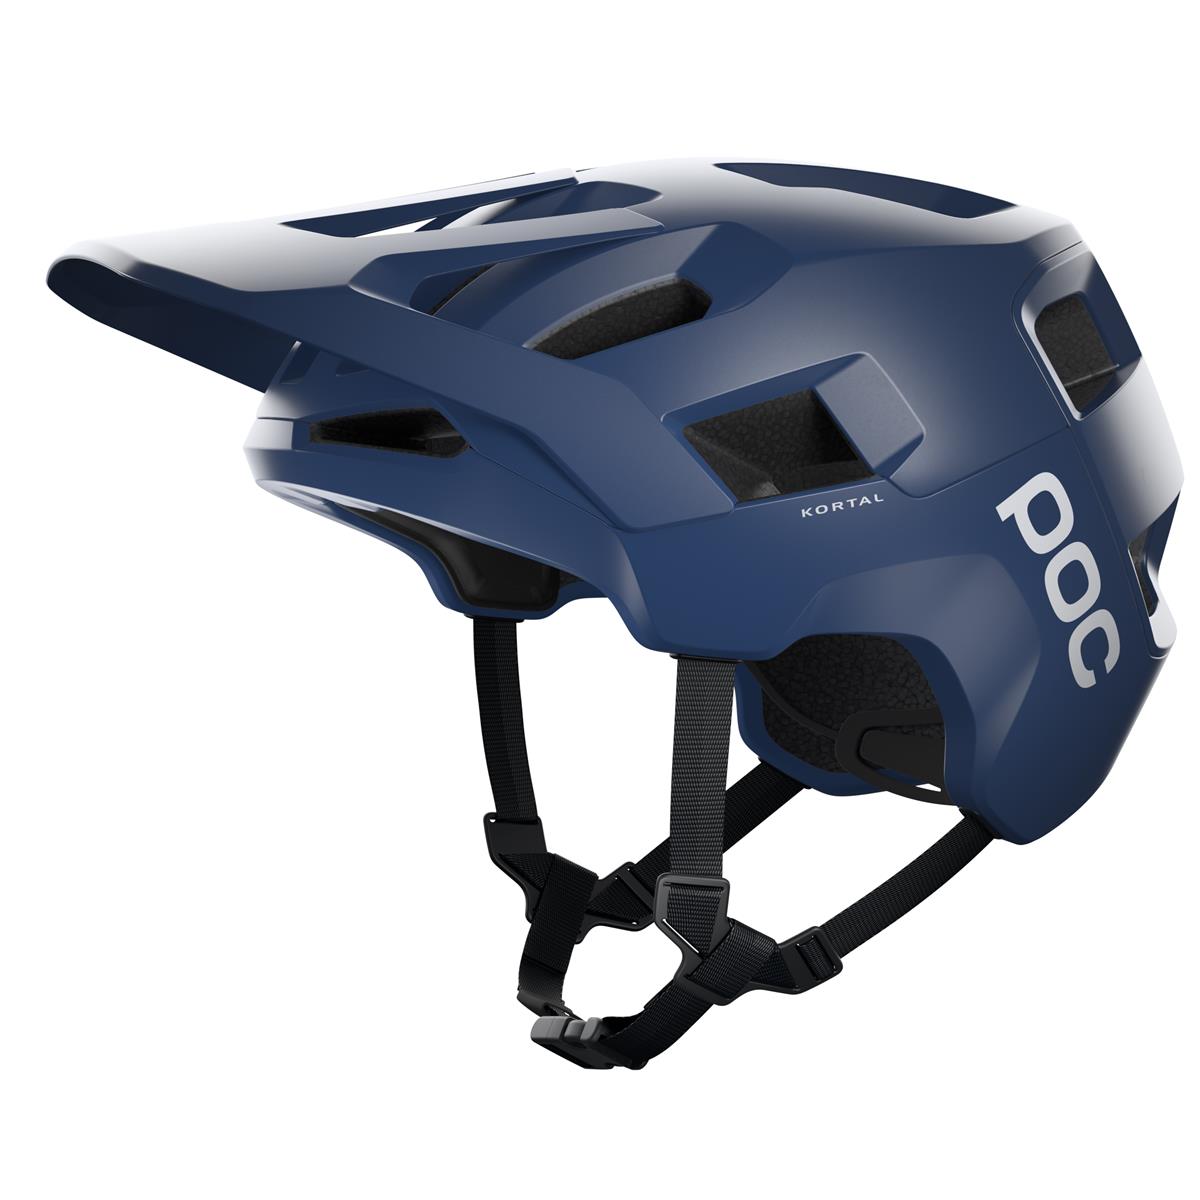 Helmet Kortal Lead Blue Matt size XS-S (51-54cm)